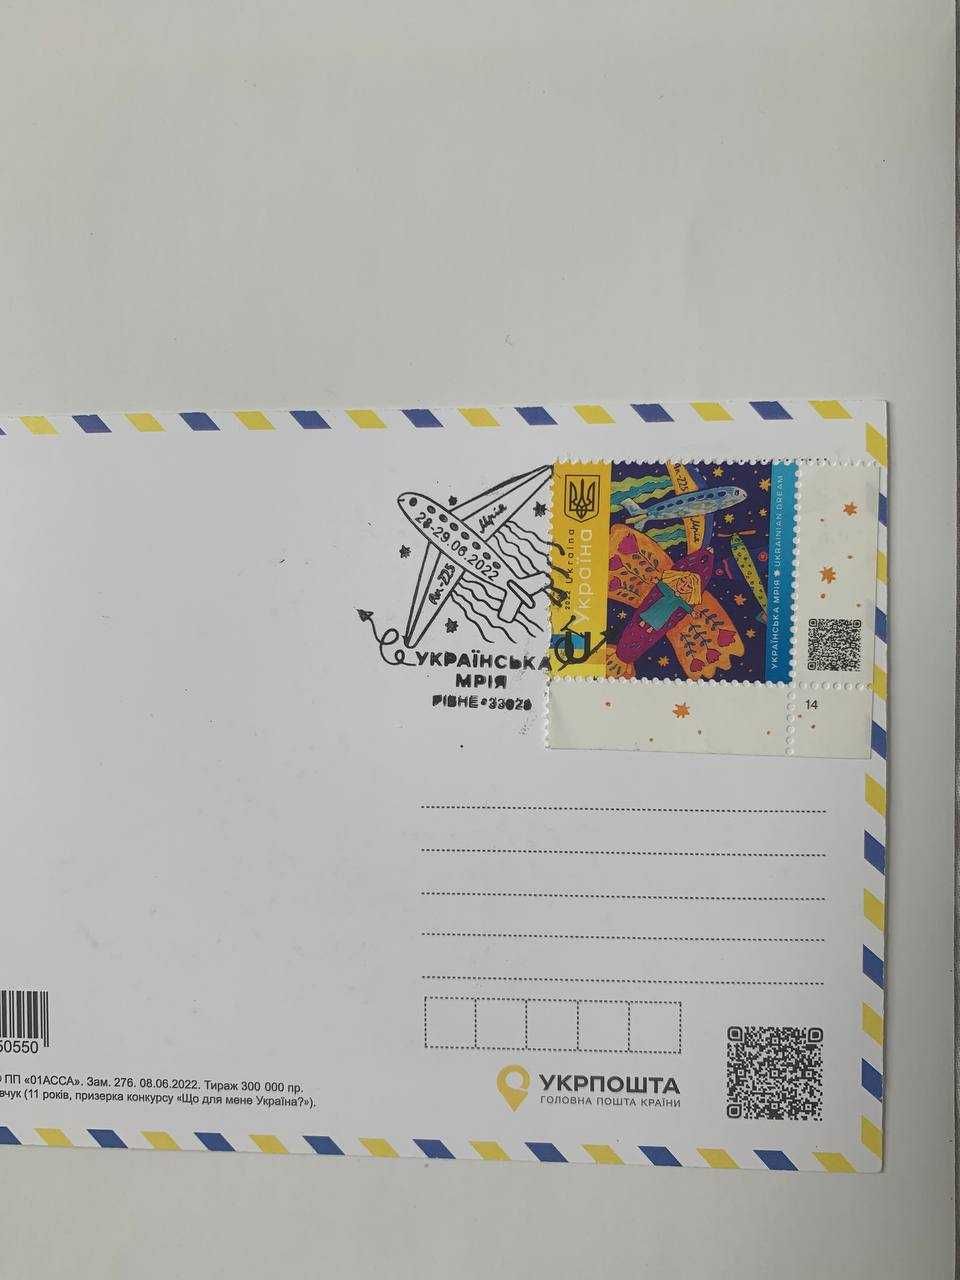 поштова марка воєнного часу «УКРАЇНСЬКА МРІЯ», листівка, конверт